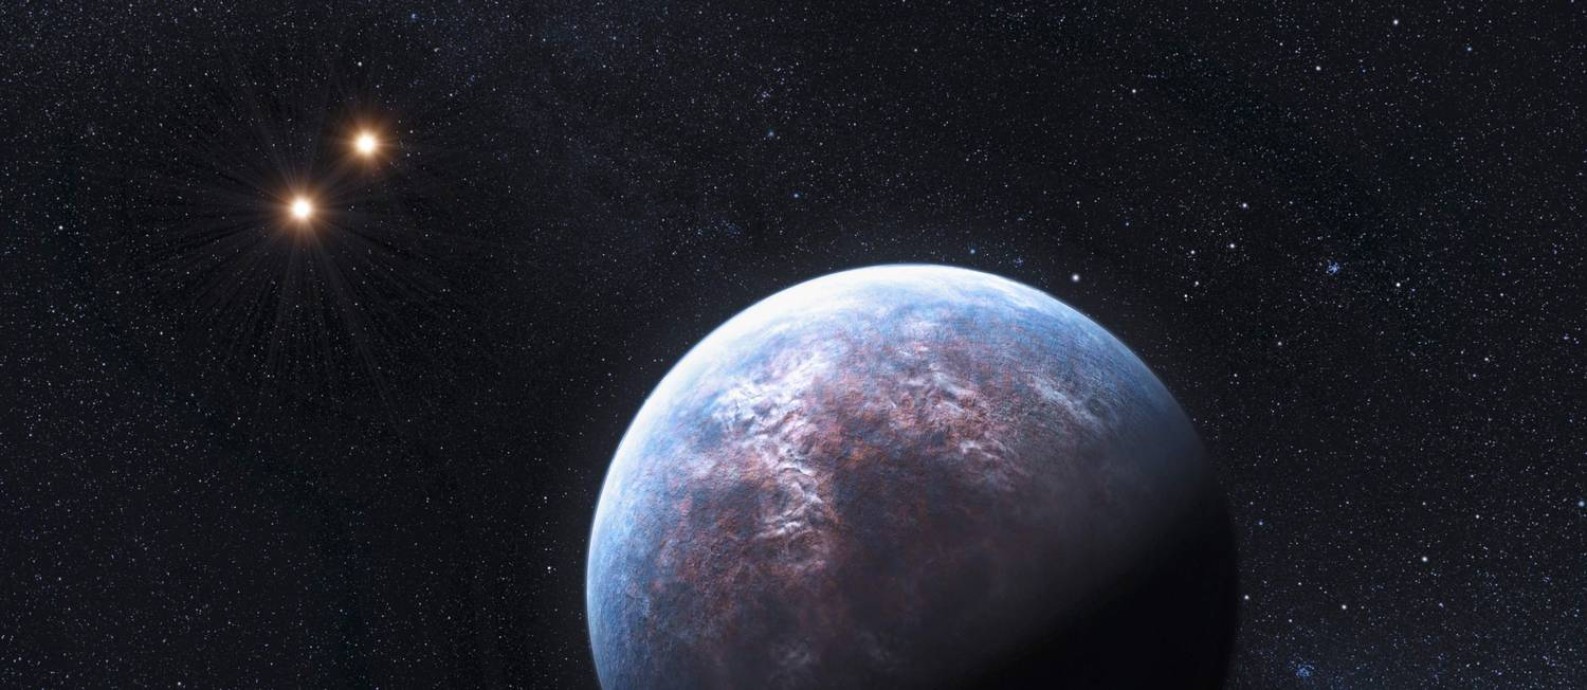 
Ilustração mostra um exoplaneta num sistema formado por duas estrelas
Foto:
L. Calcada
/
REUTERS
